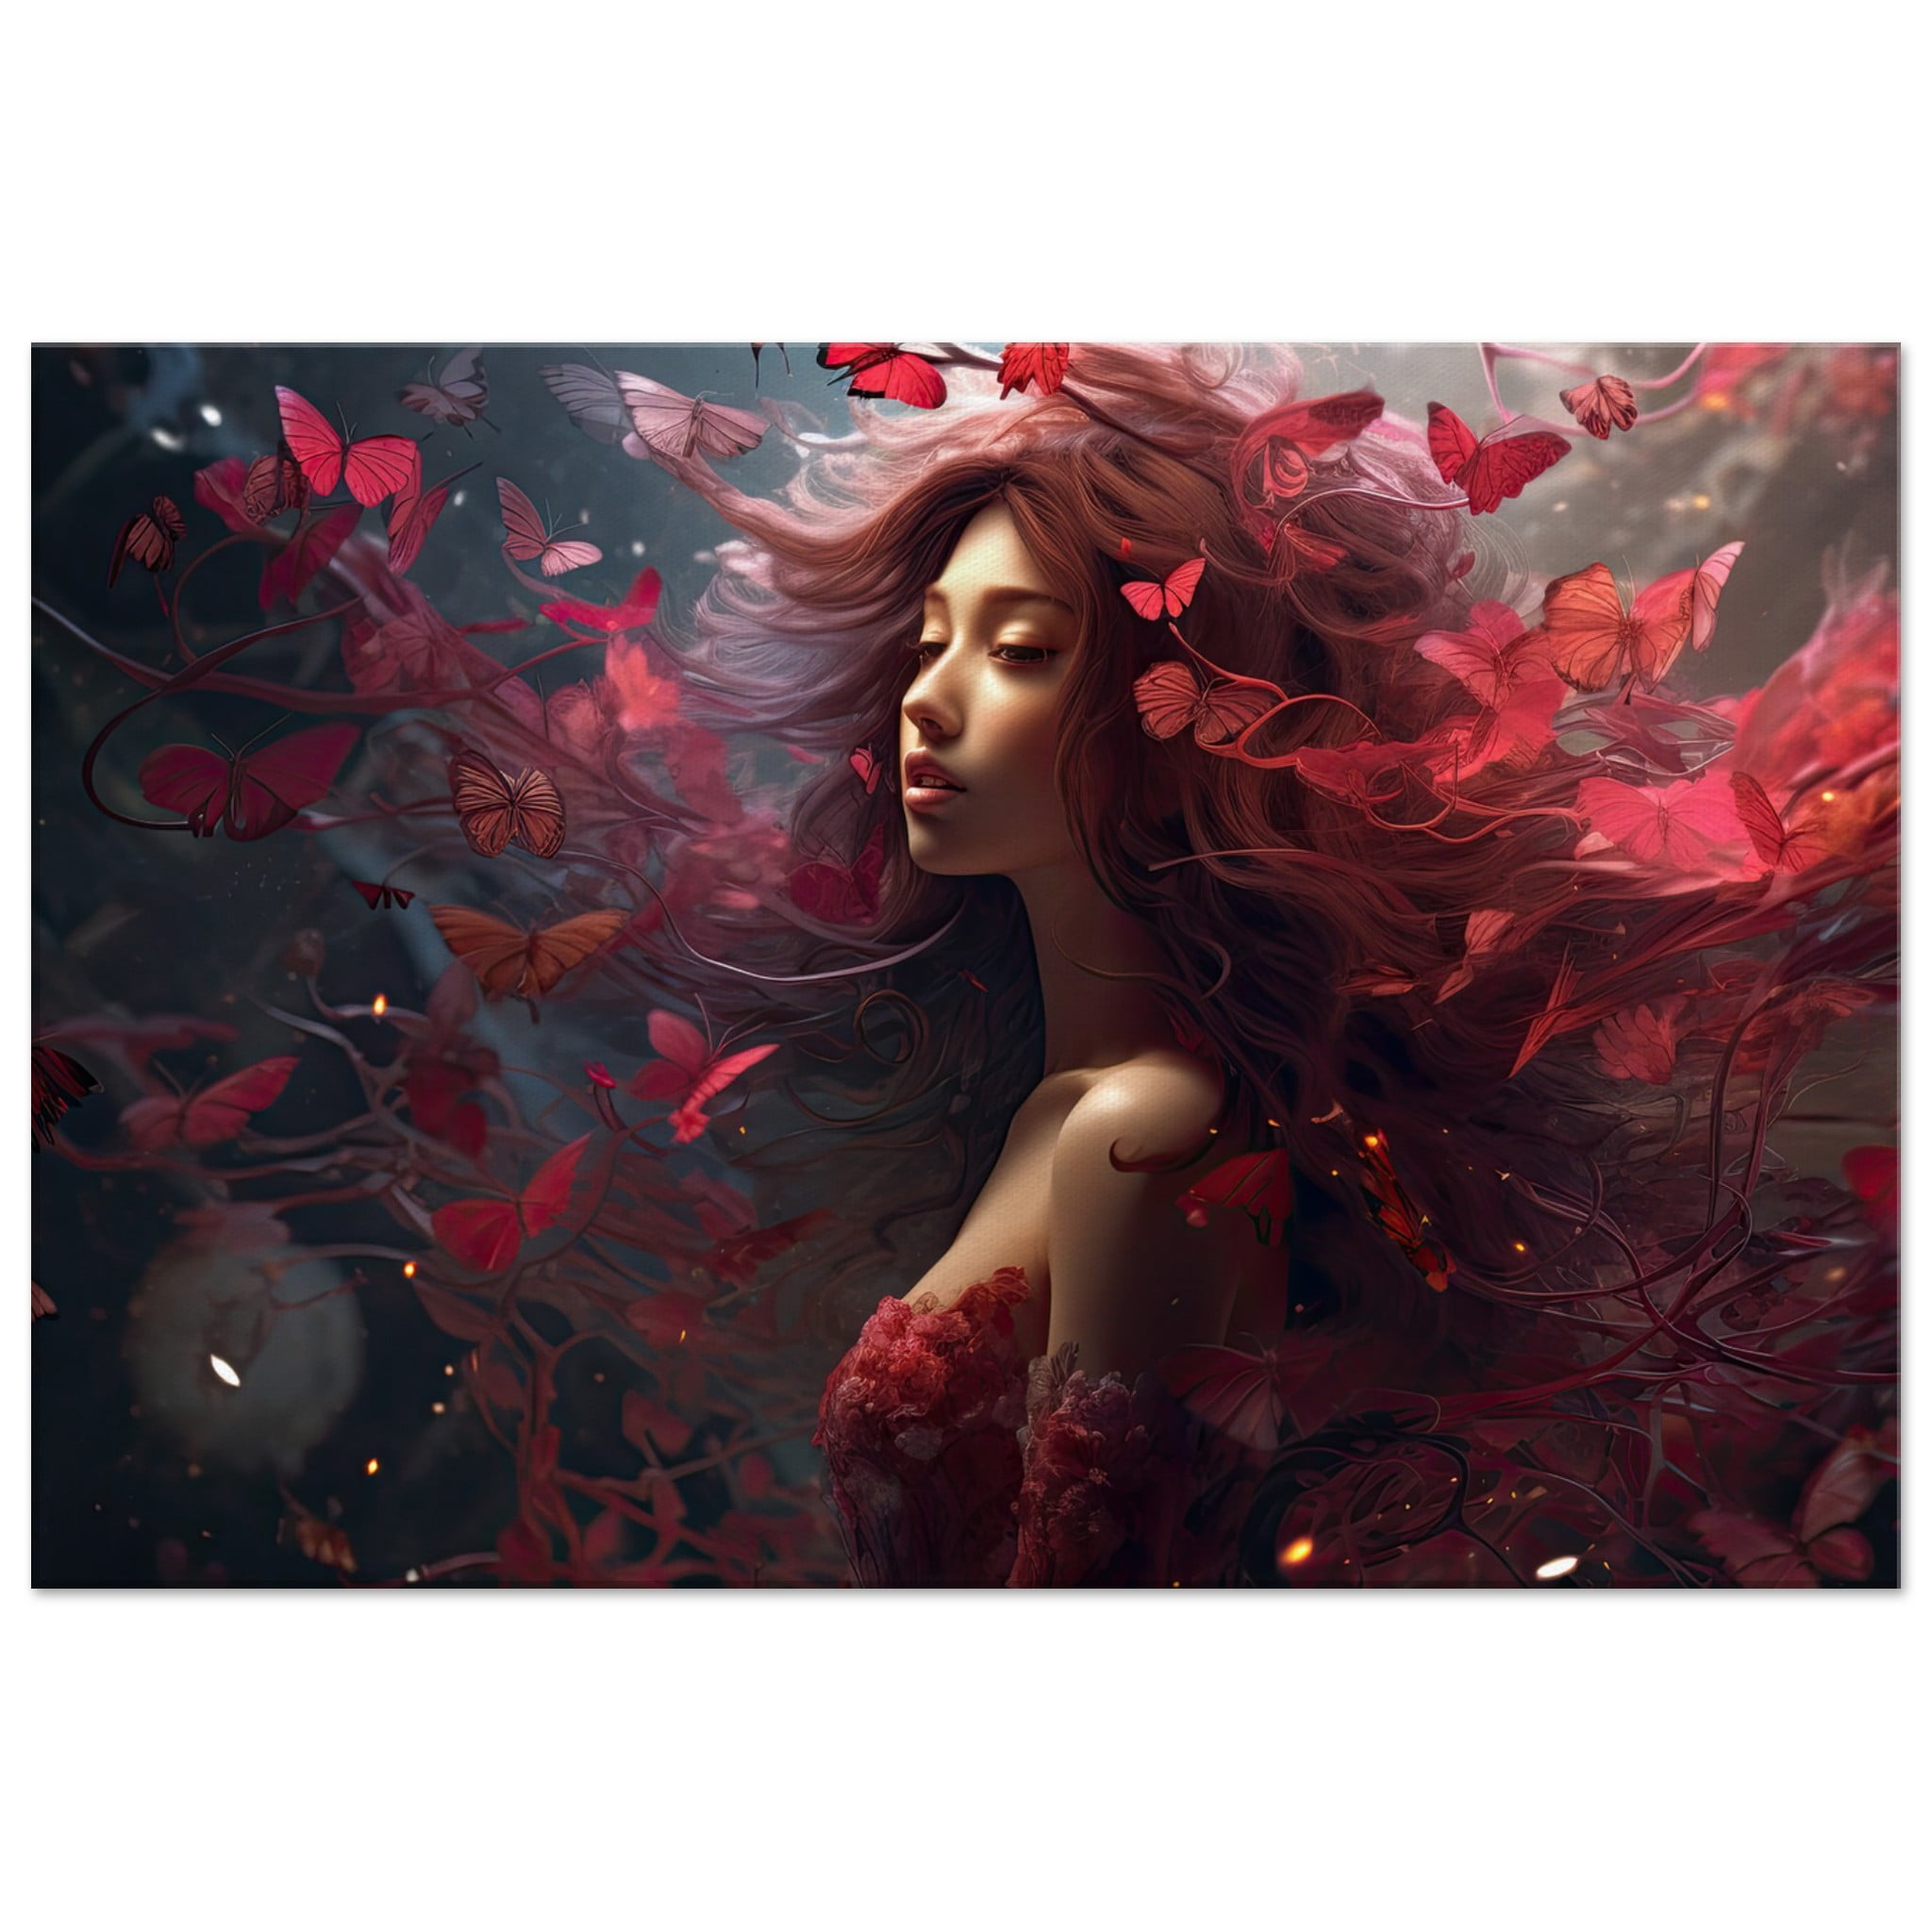 Crimson Reverie Beautiful Canvas Print – 60×90 cm / 24×36″, Thick